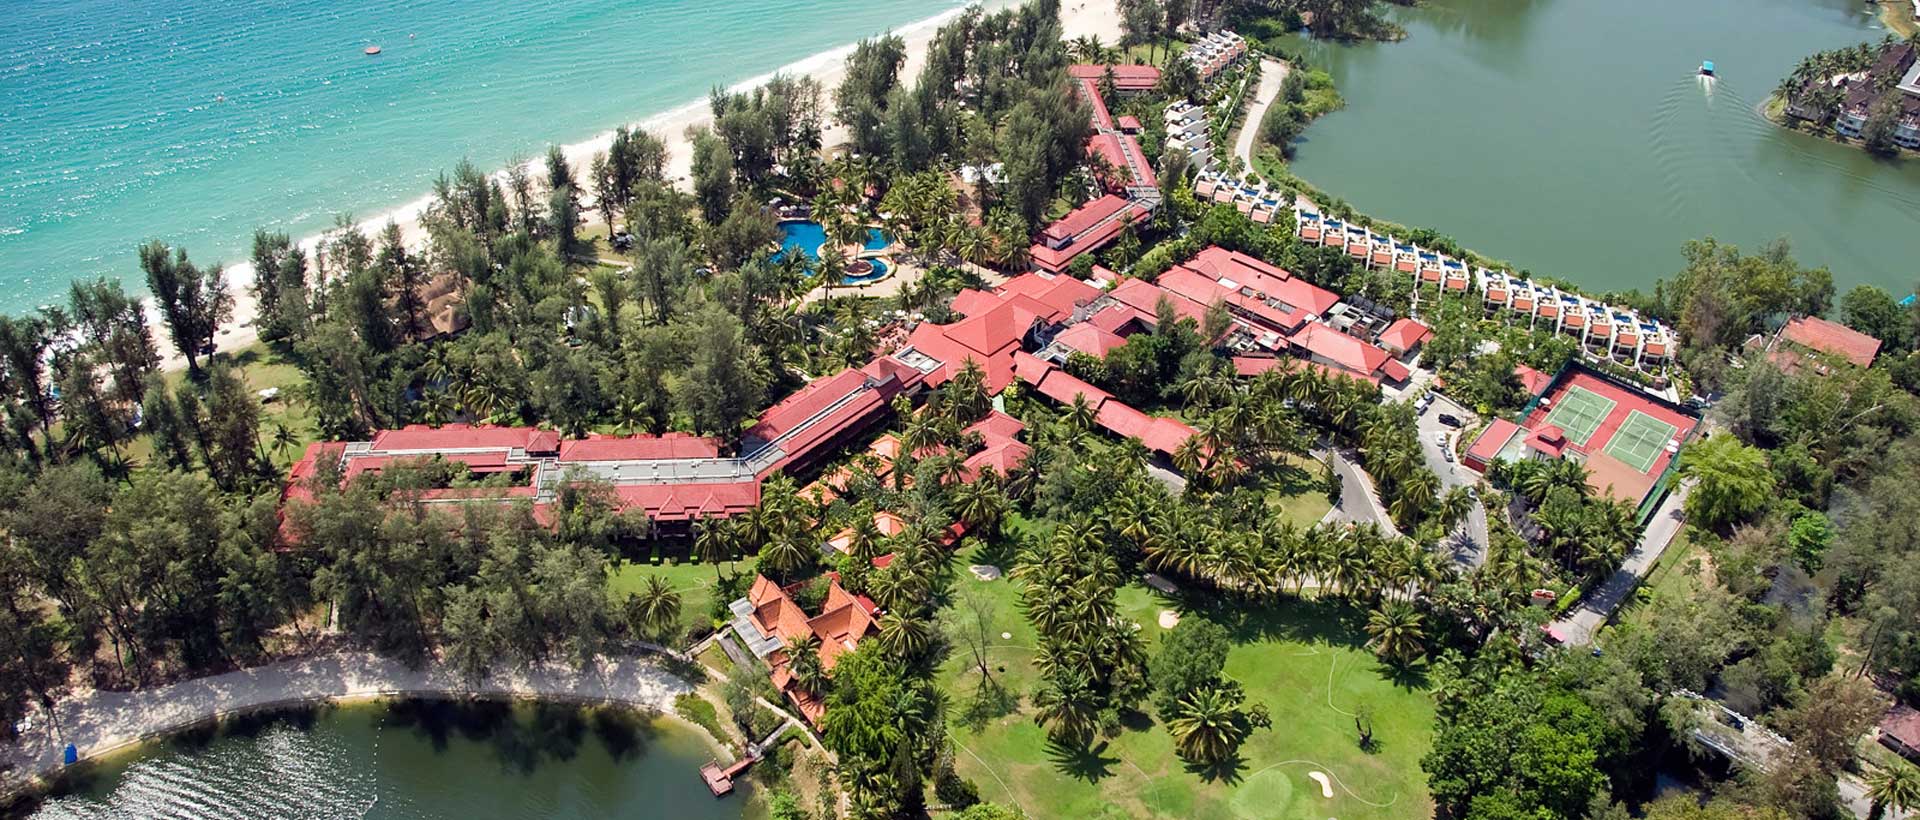 Golfreisen Phuket - Dusit Thani Laguna Phuket. Als Mitglied der "Leading Hotels of the World" gehört das Dusit Laguna seit vielen Jahren zu den führenden Häusern auf Phuket. Freundlicher Service und die Super-Strandlage machen es so überaus beliebt.